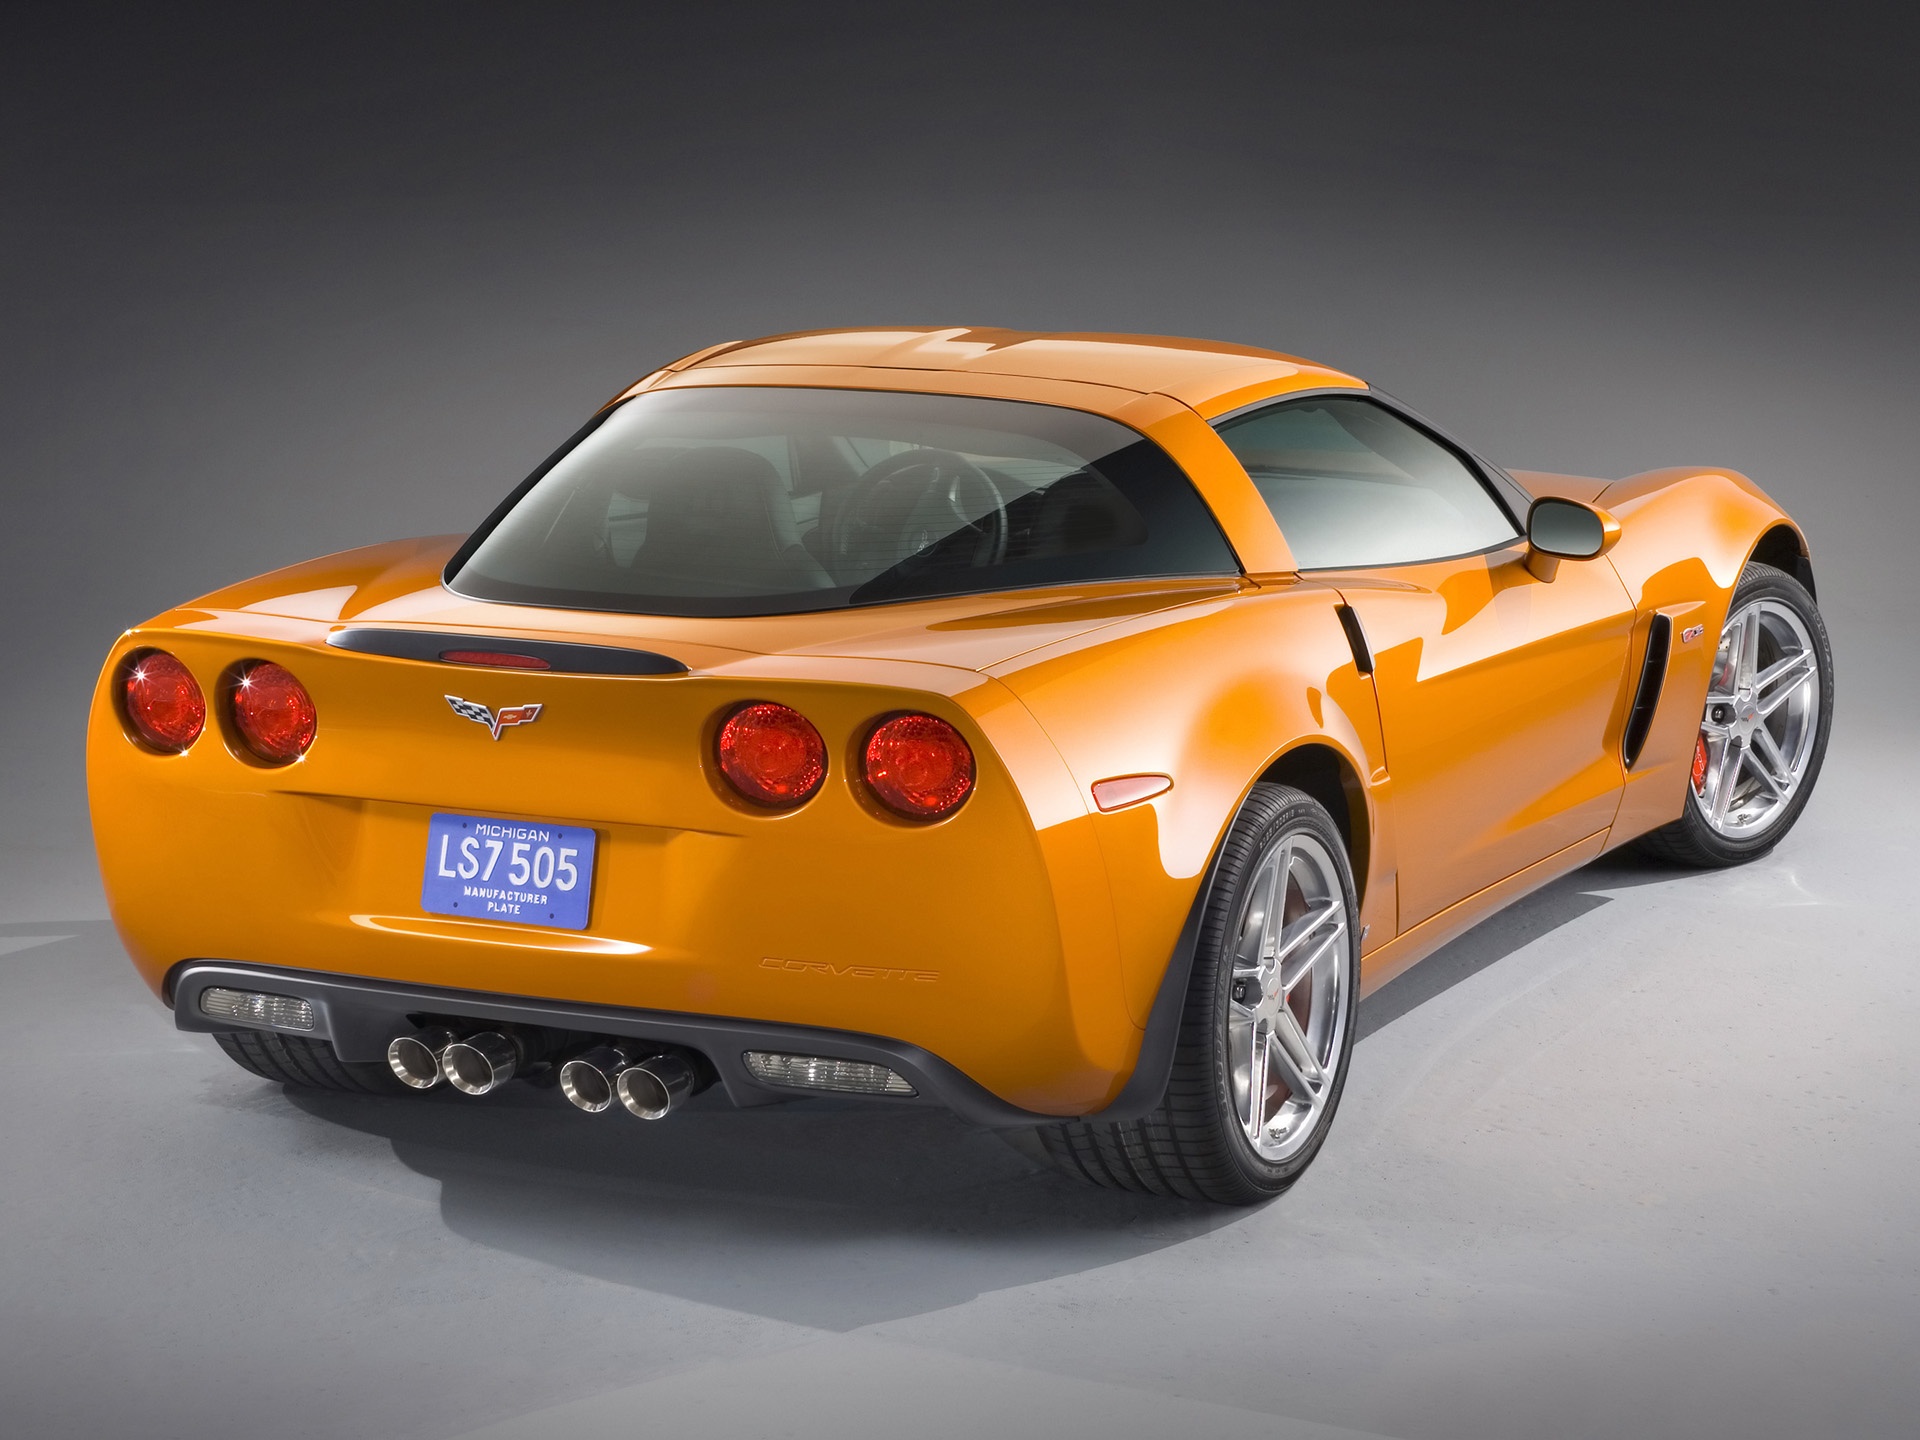 Corvette Z06 orange wallpaper. Corvette Z06 orange